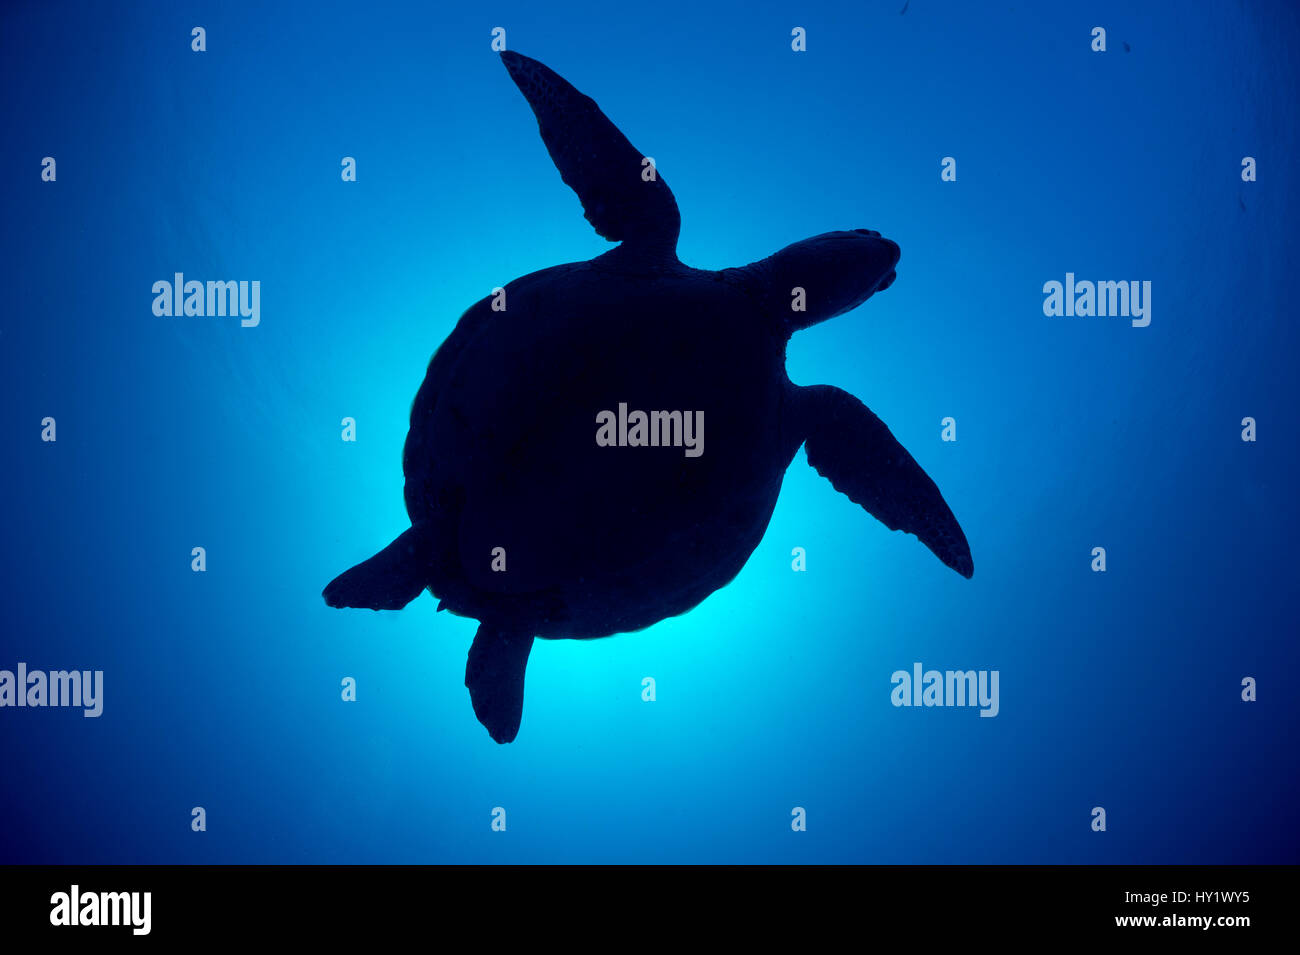 Silueta de una tortuga verde (Chelonia mydas) contra el sol en el azul del agua por encima de los arrecifes de coral. Islas Rocosas, Palau, Mirconesia. Oeste del Océano Pacífico tropical. Foto de stock